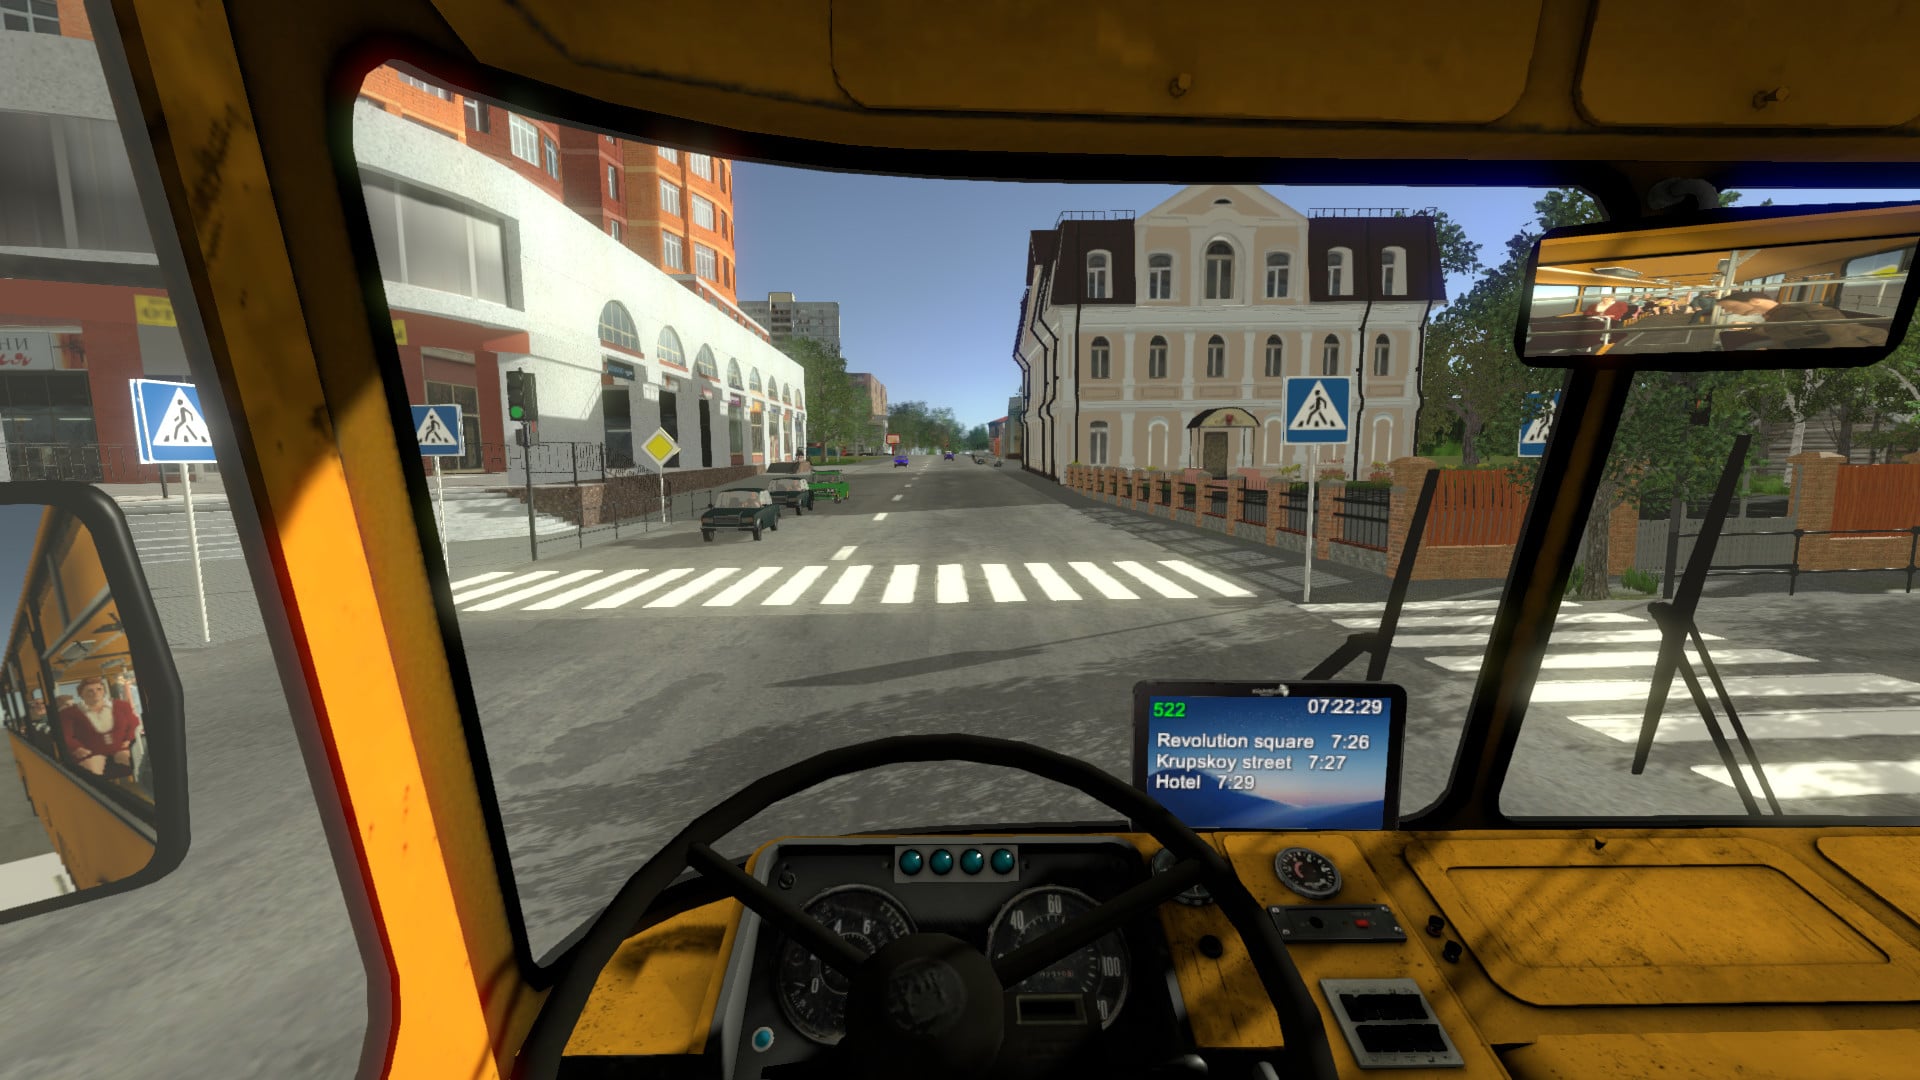 تحميل لعبه محاكات الباصات جديده رائعه بحجم صغير City Bus Simulator 2018